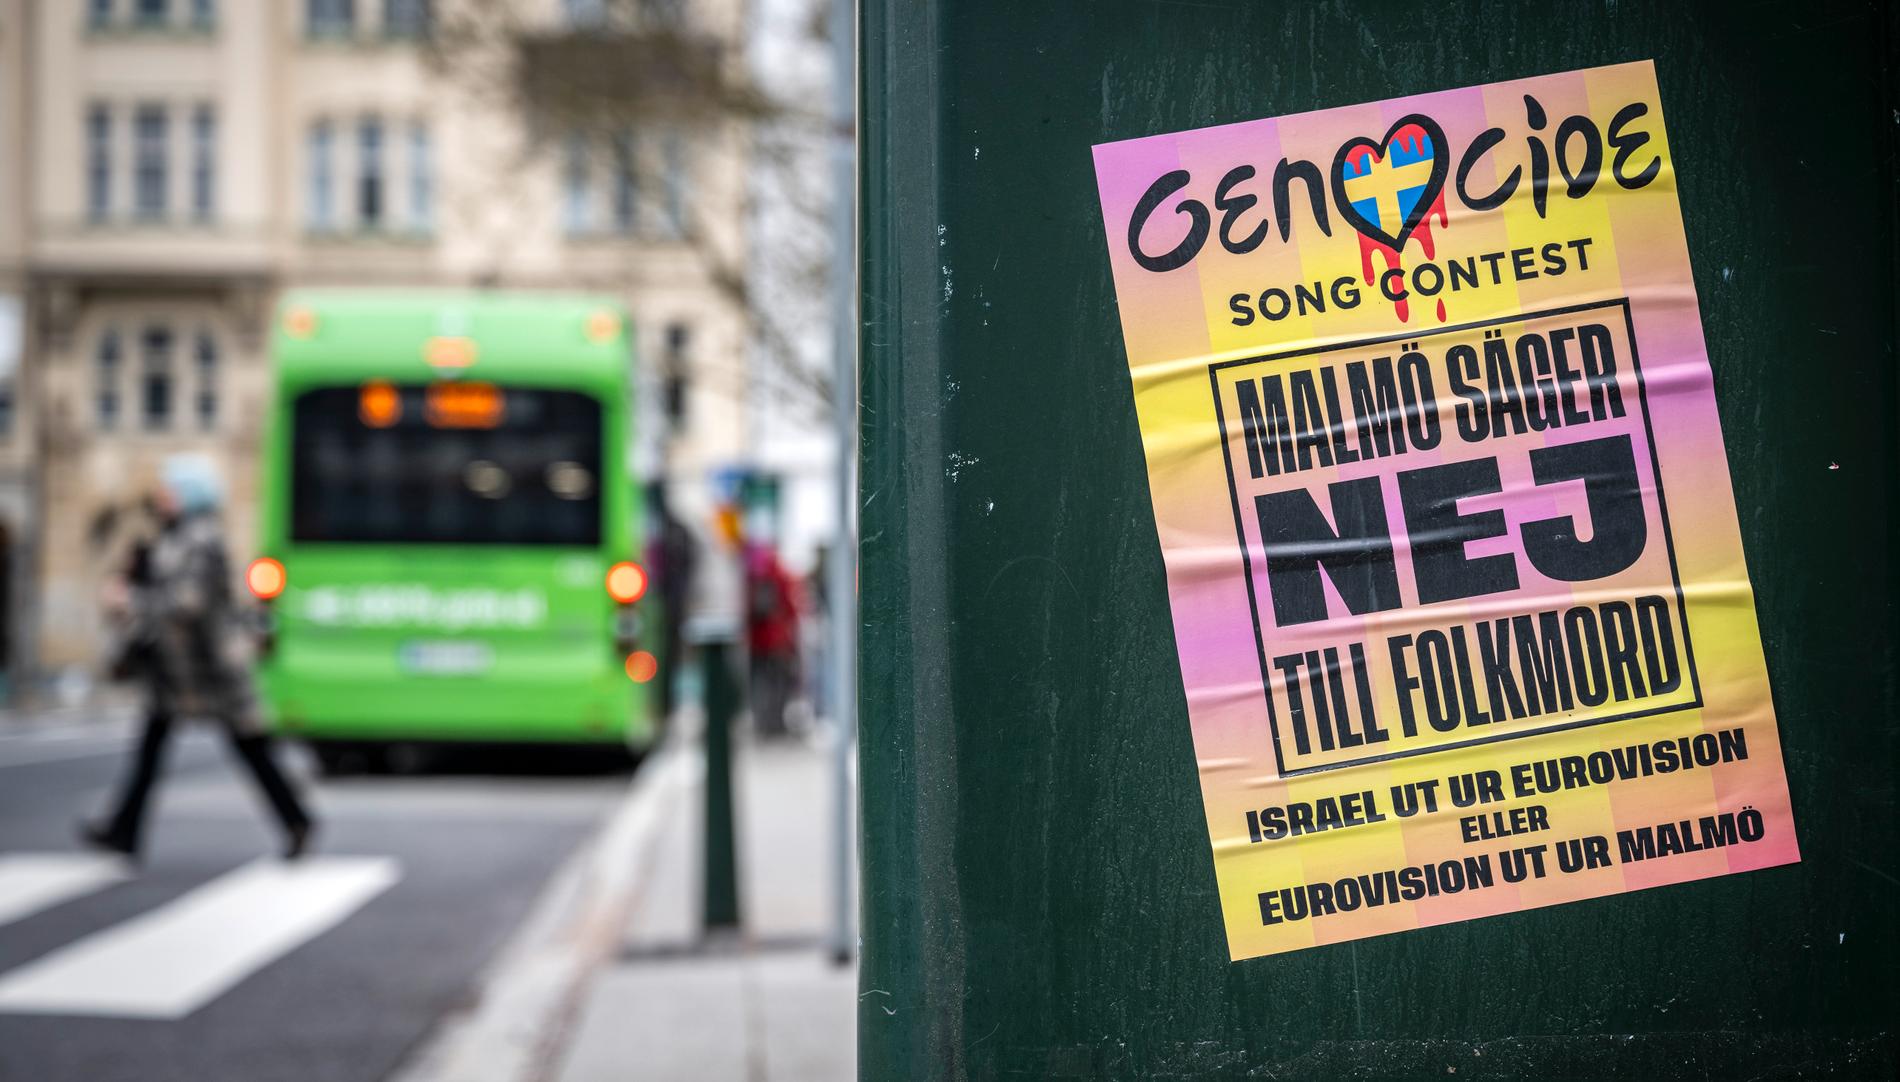 Affischer med budskapet "Genocide Song Contest – Israel ut ur Eurovision eller Eurovision ut ur Malmö" fanns runt om i Malmö häromveckan.